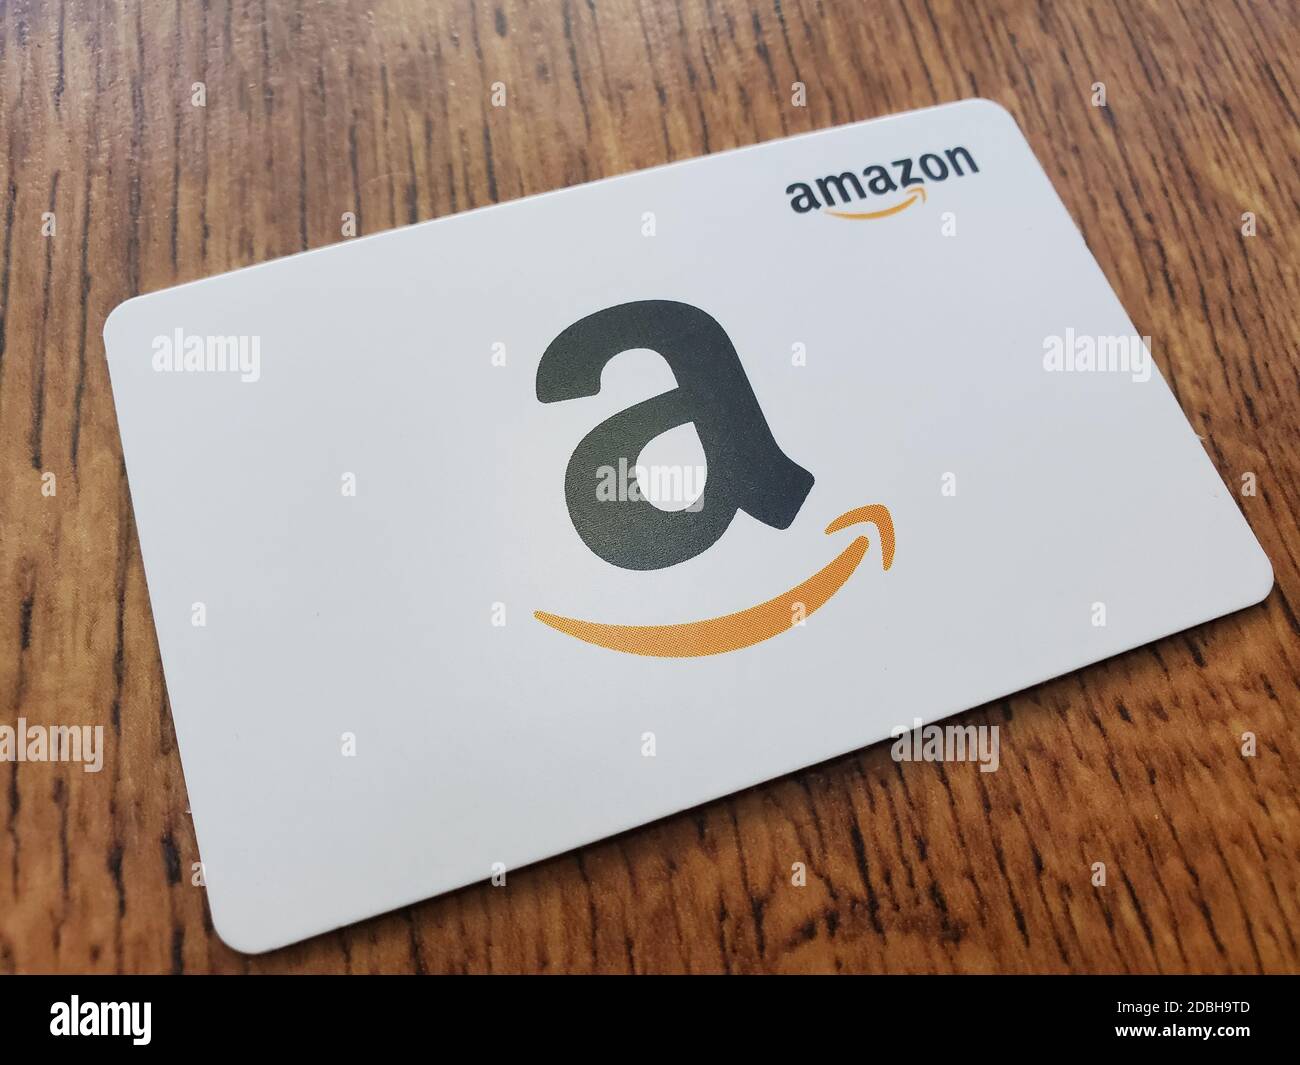 Amazon card immagini e fotografie stock ad alta risoluzione - Alamy